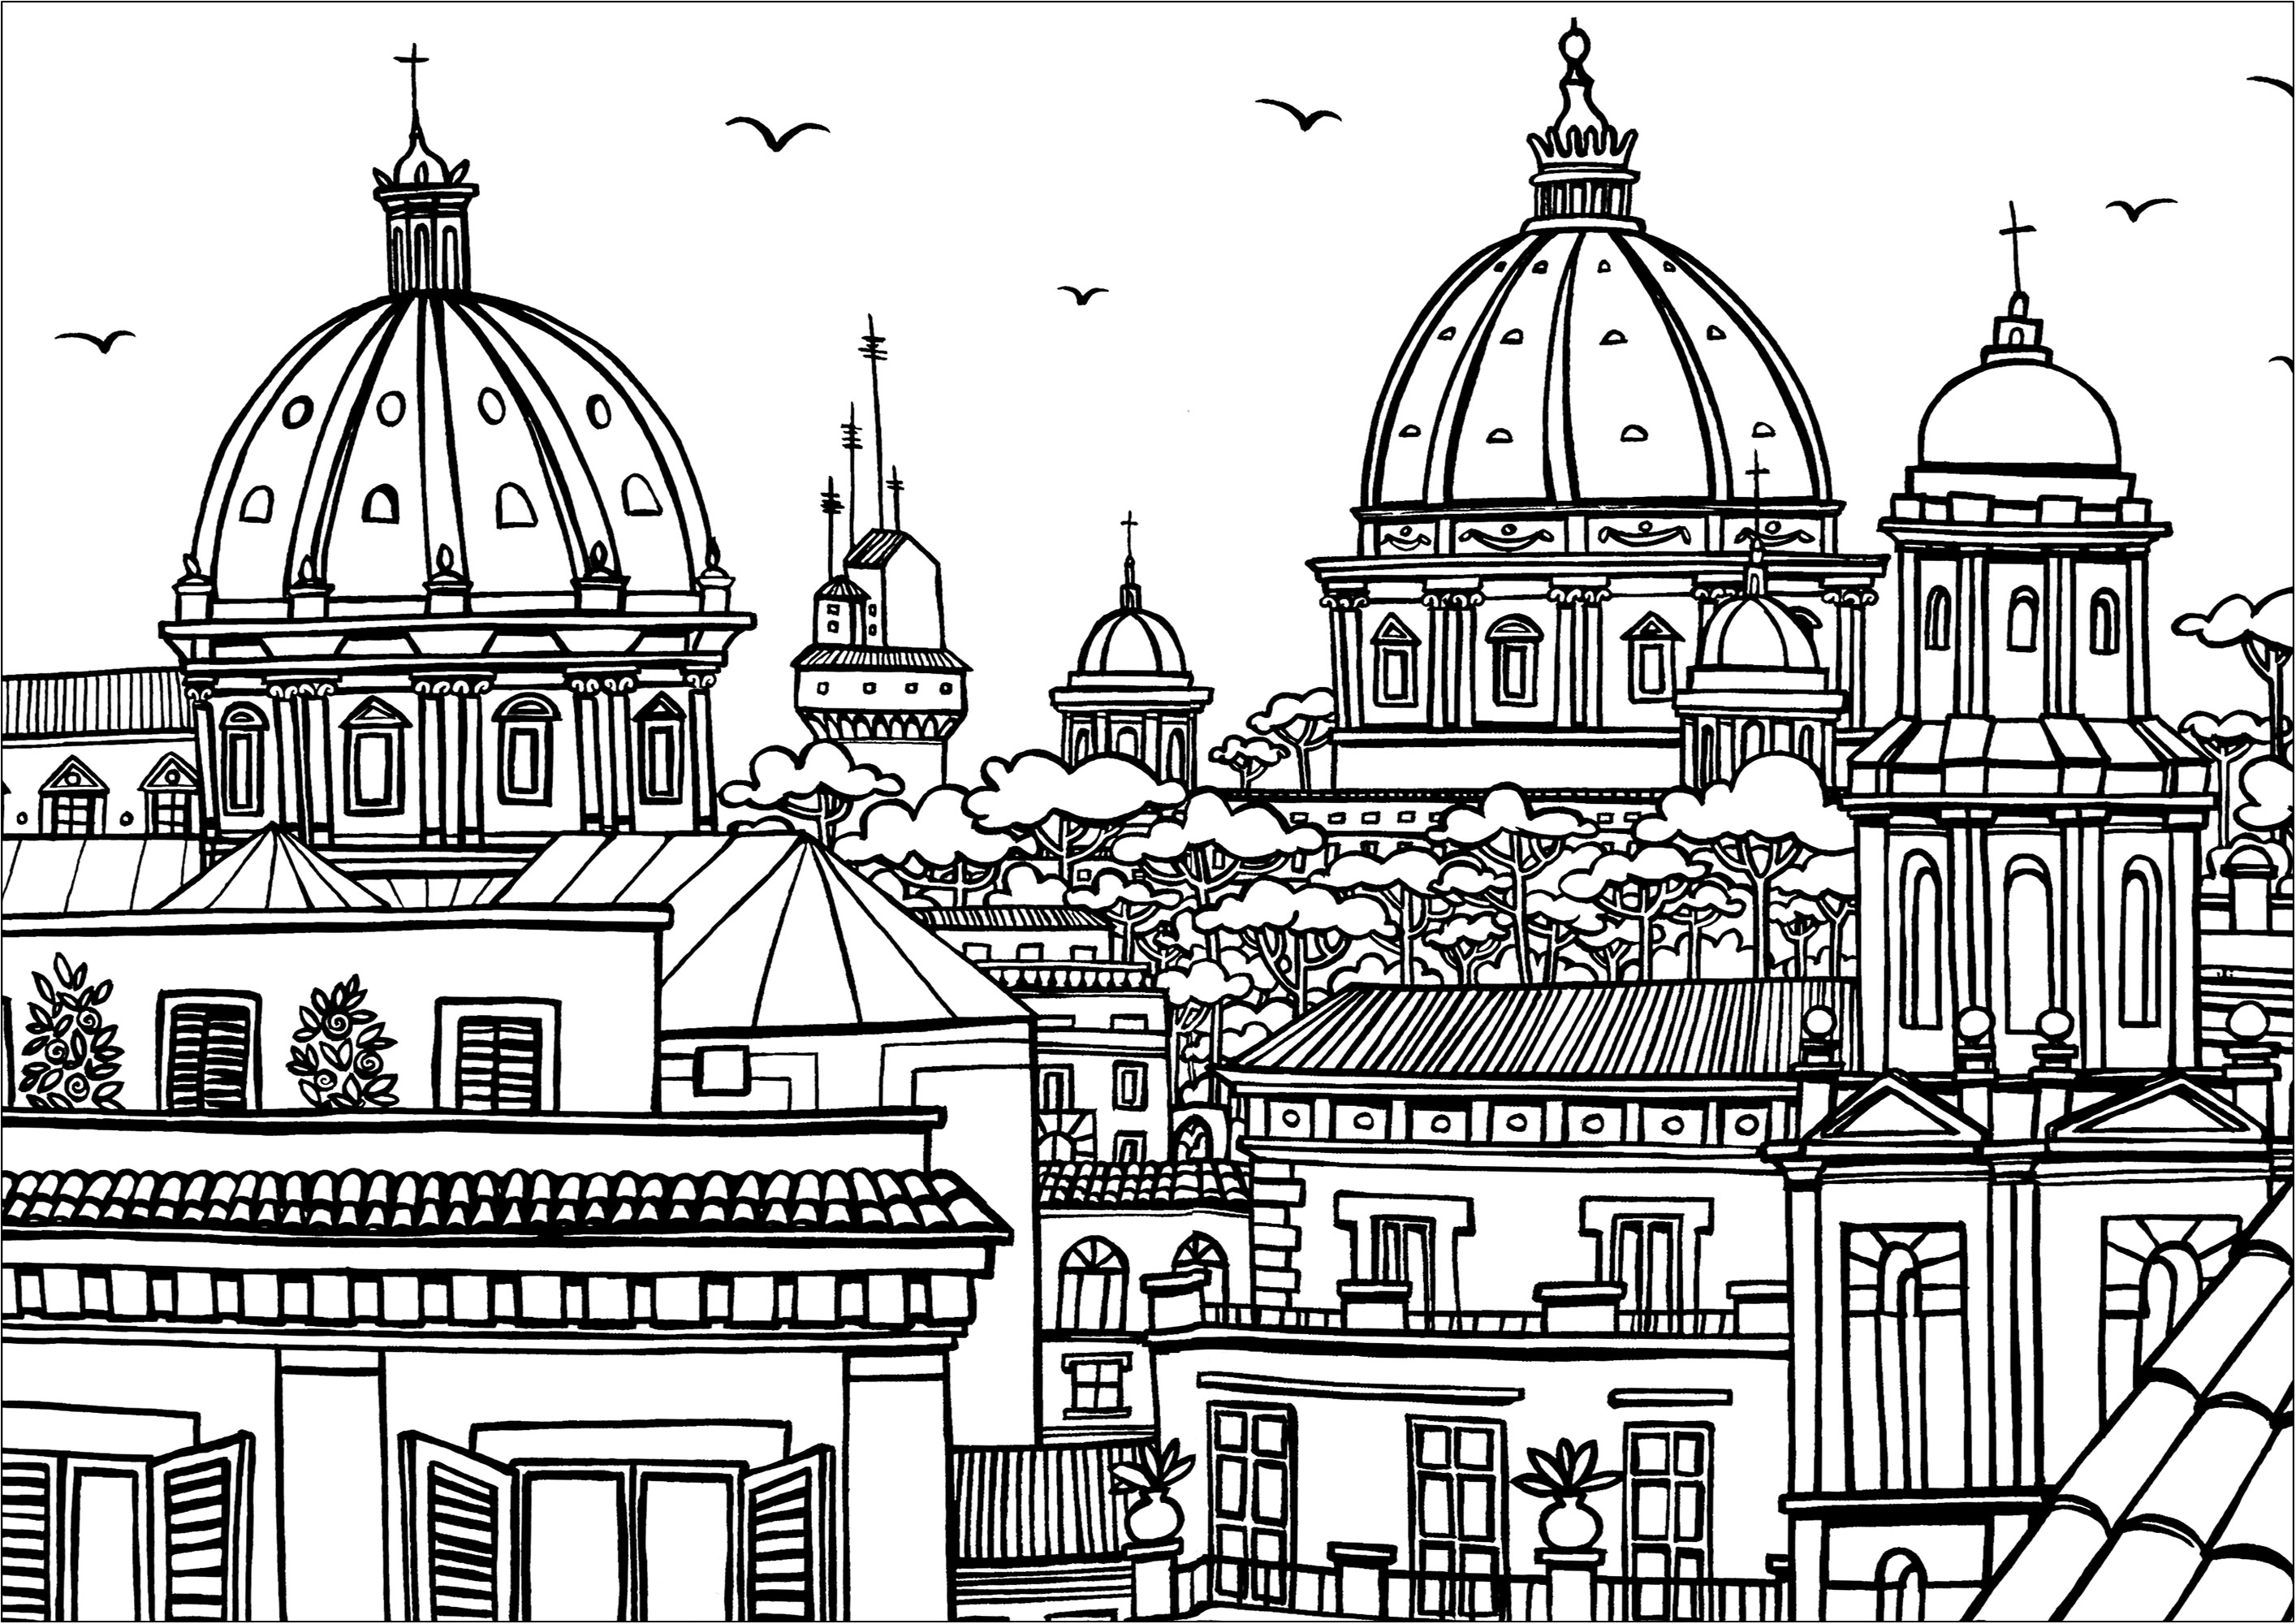 Ausmalbild von verschiedenen Denkmälern in Rom. Verschiedene Häuser, Kirchen und Denkmäler in Rom, von oben gesehen. Die Kirche Santa Maria di Loreto und die Kirche Santissimo Nome di Maria al Foro Traiano, in der Nähe der Piazza Venezia und des Kapitolshügels, sind deutlich zu erkennen.